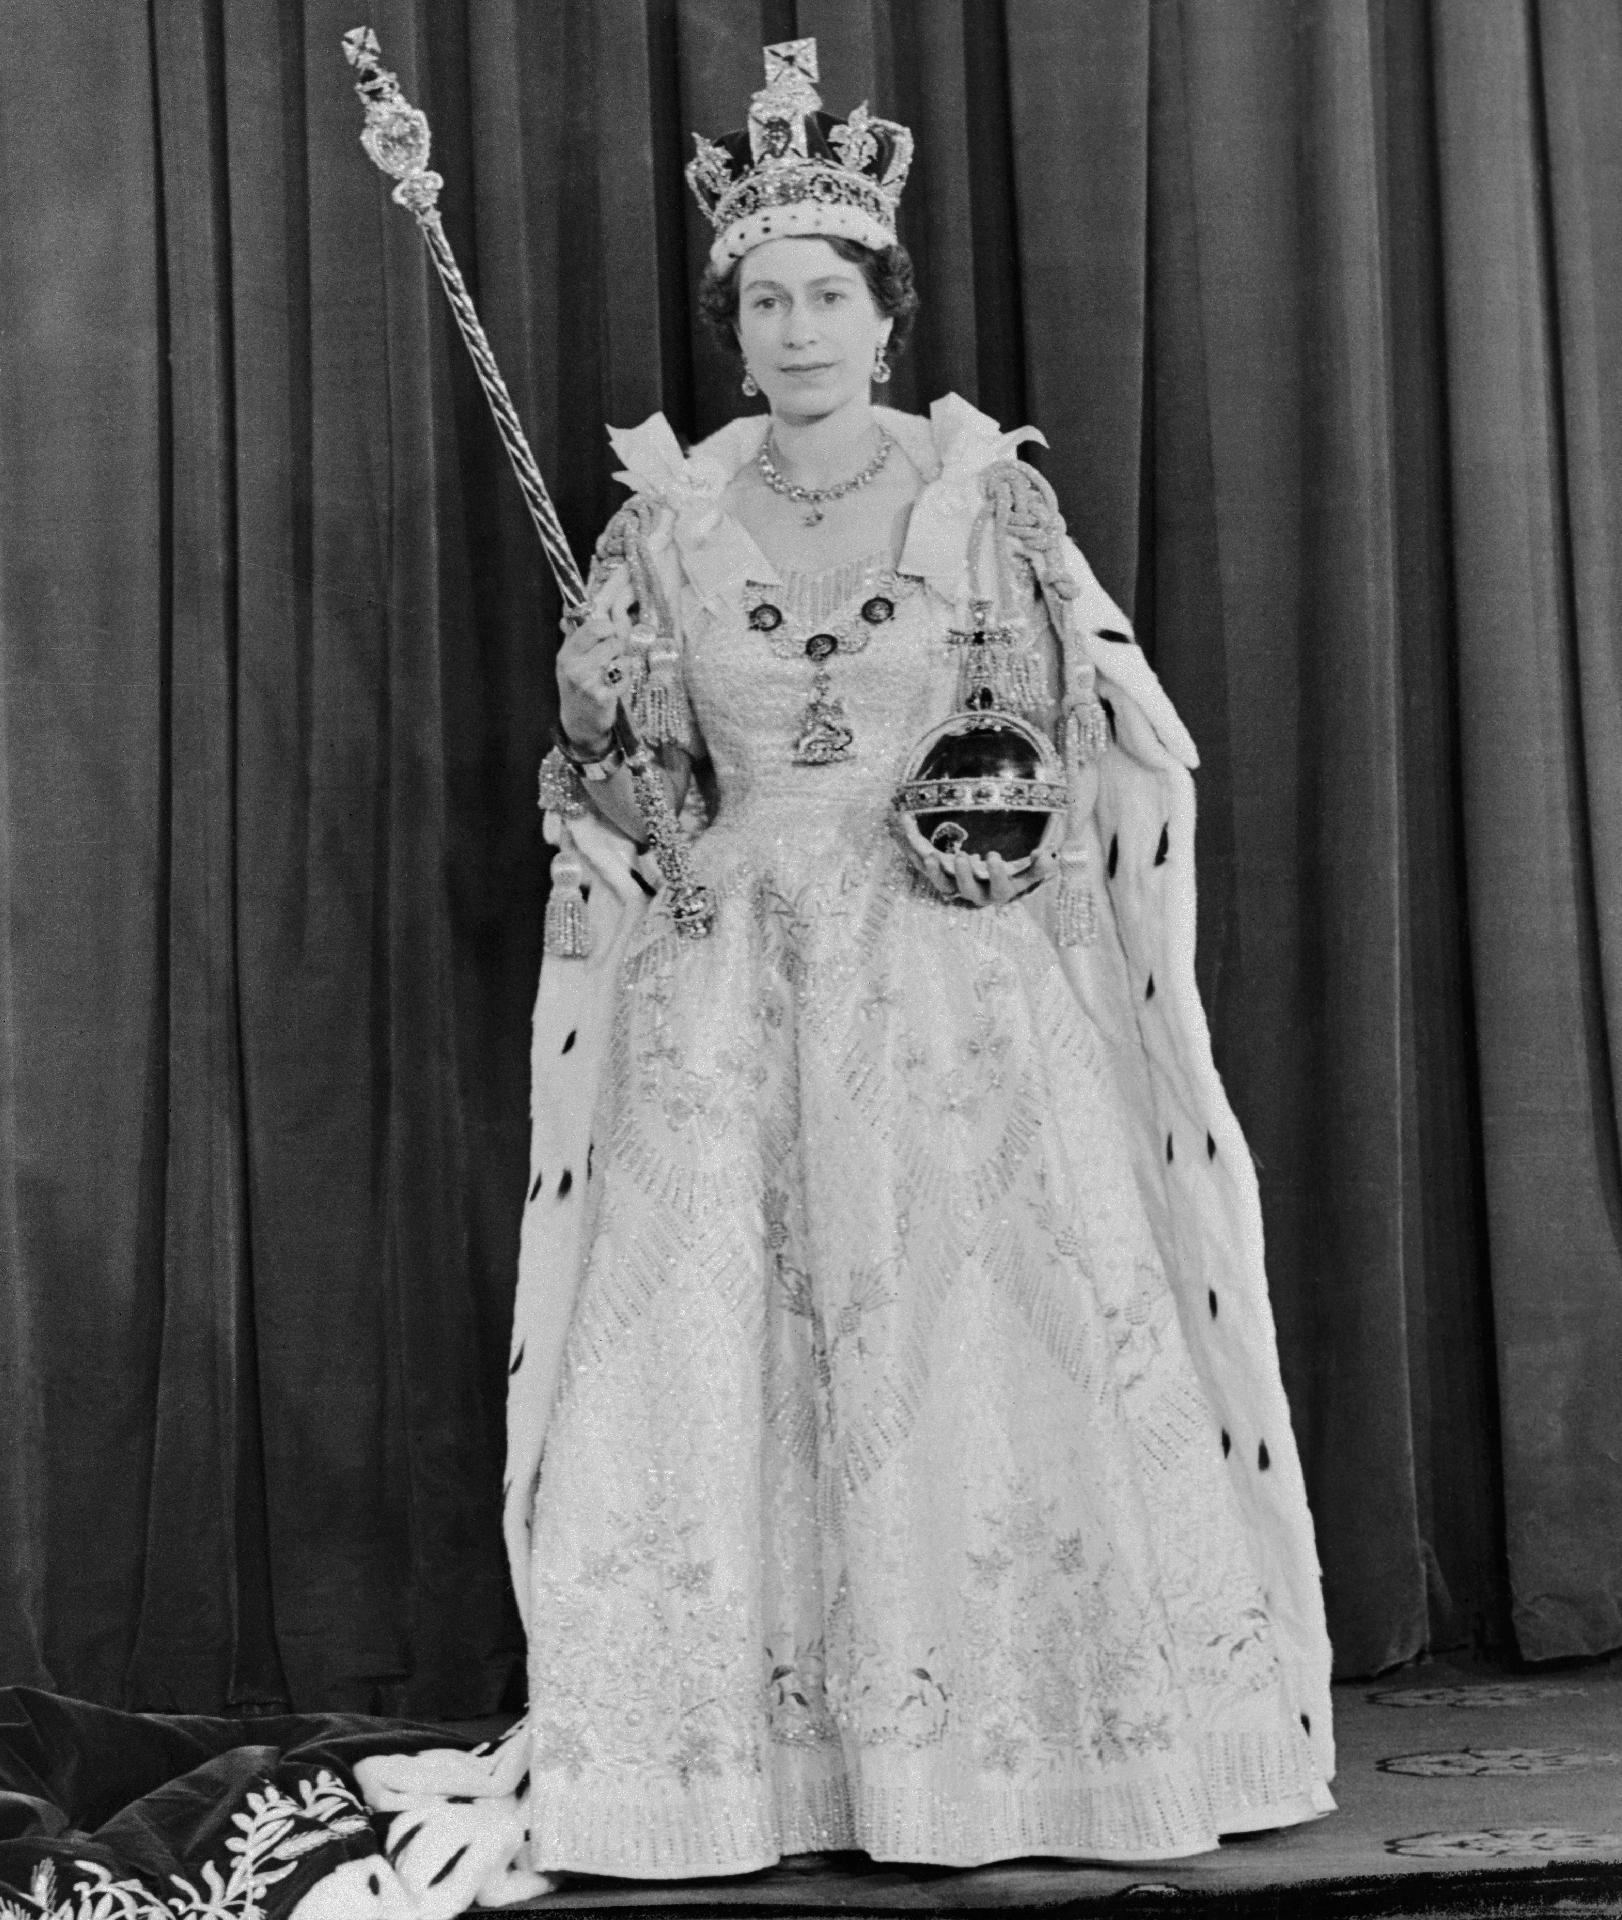 Queen Elizabeth II after her coronation on June 2, 1953 - Getty Images